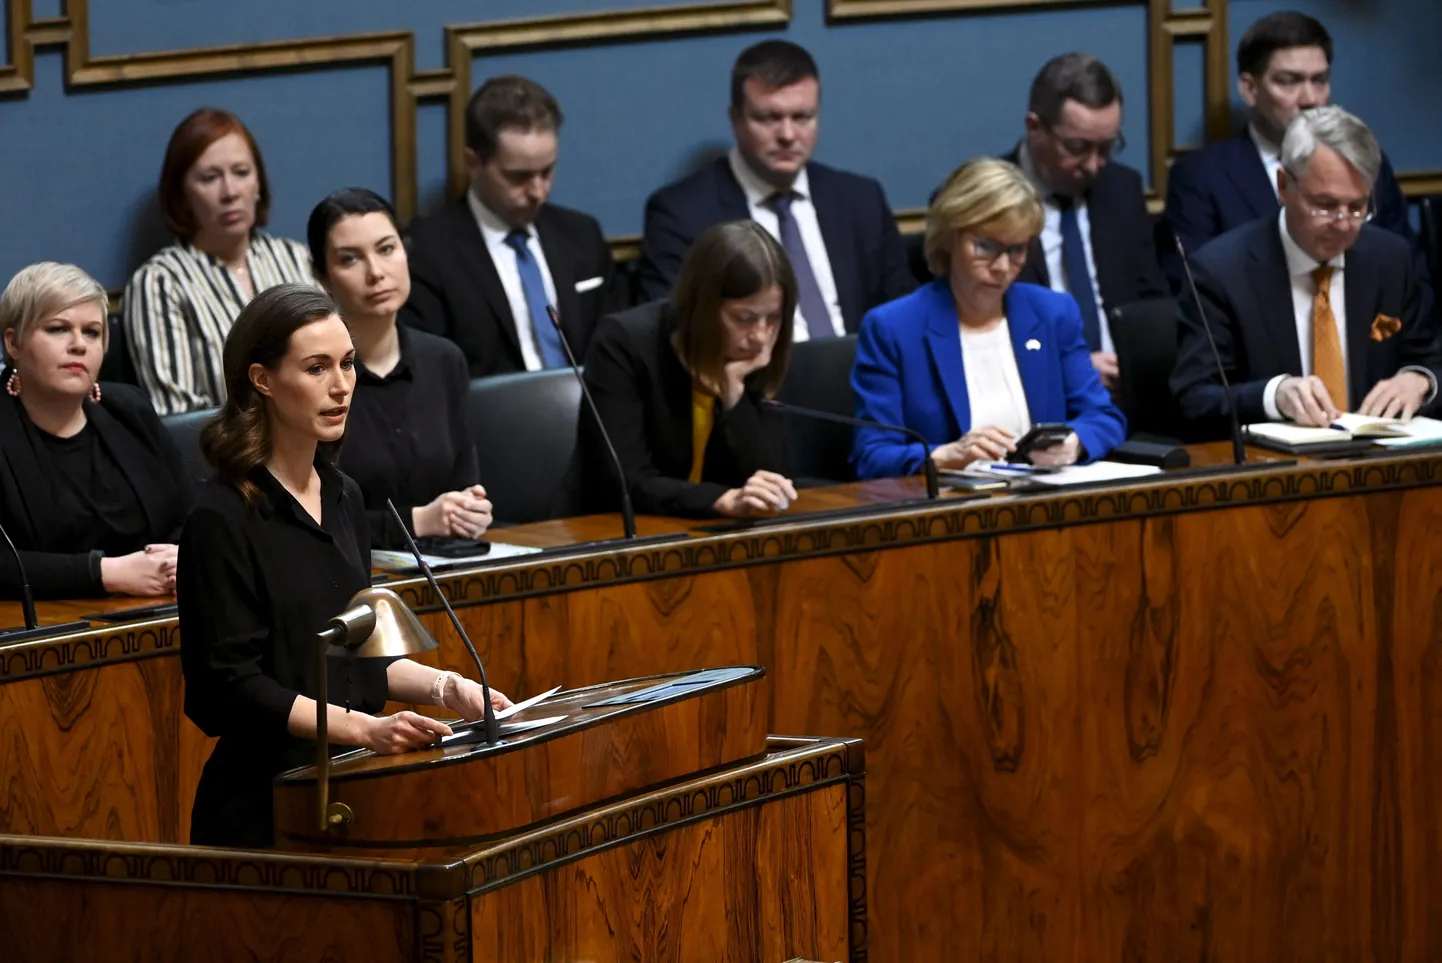 Soome peaminister Sanna Marin 16.05.2022 eduskunta täiskogu istungil arutamas NATO-ga liitumise küsimust.